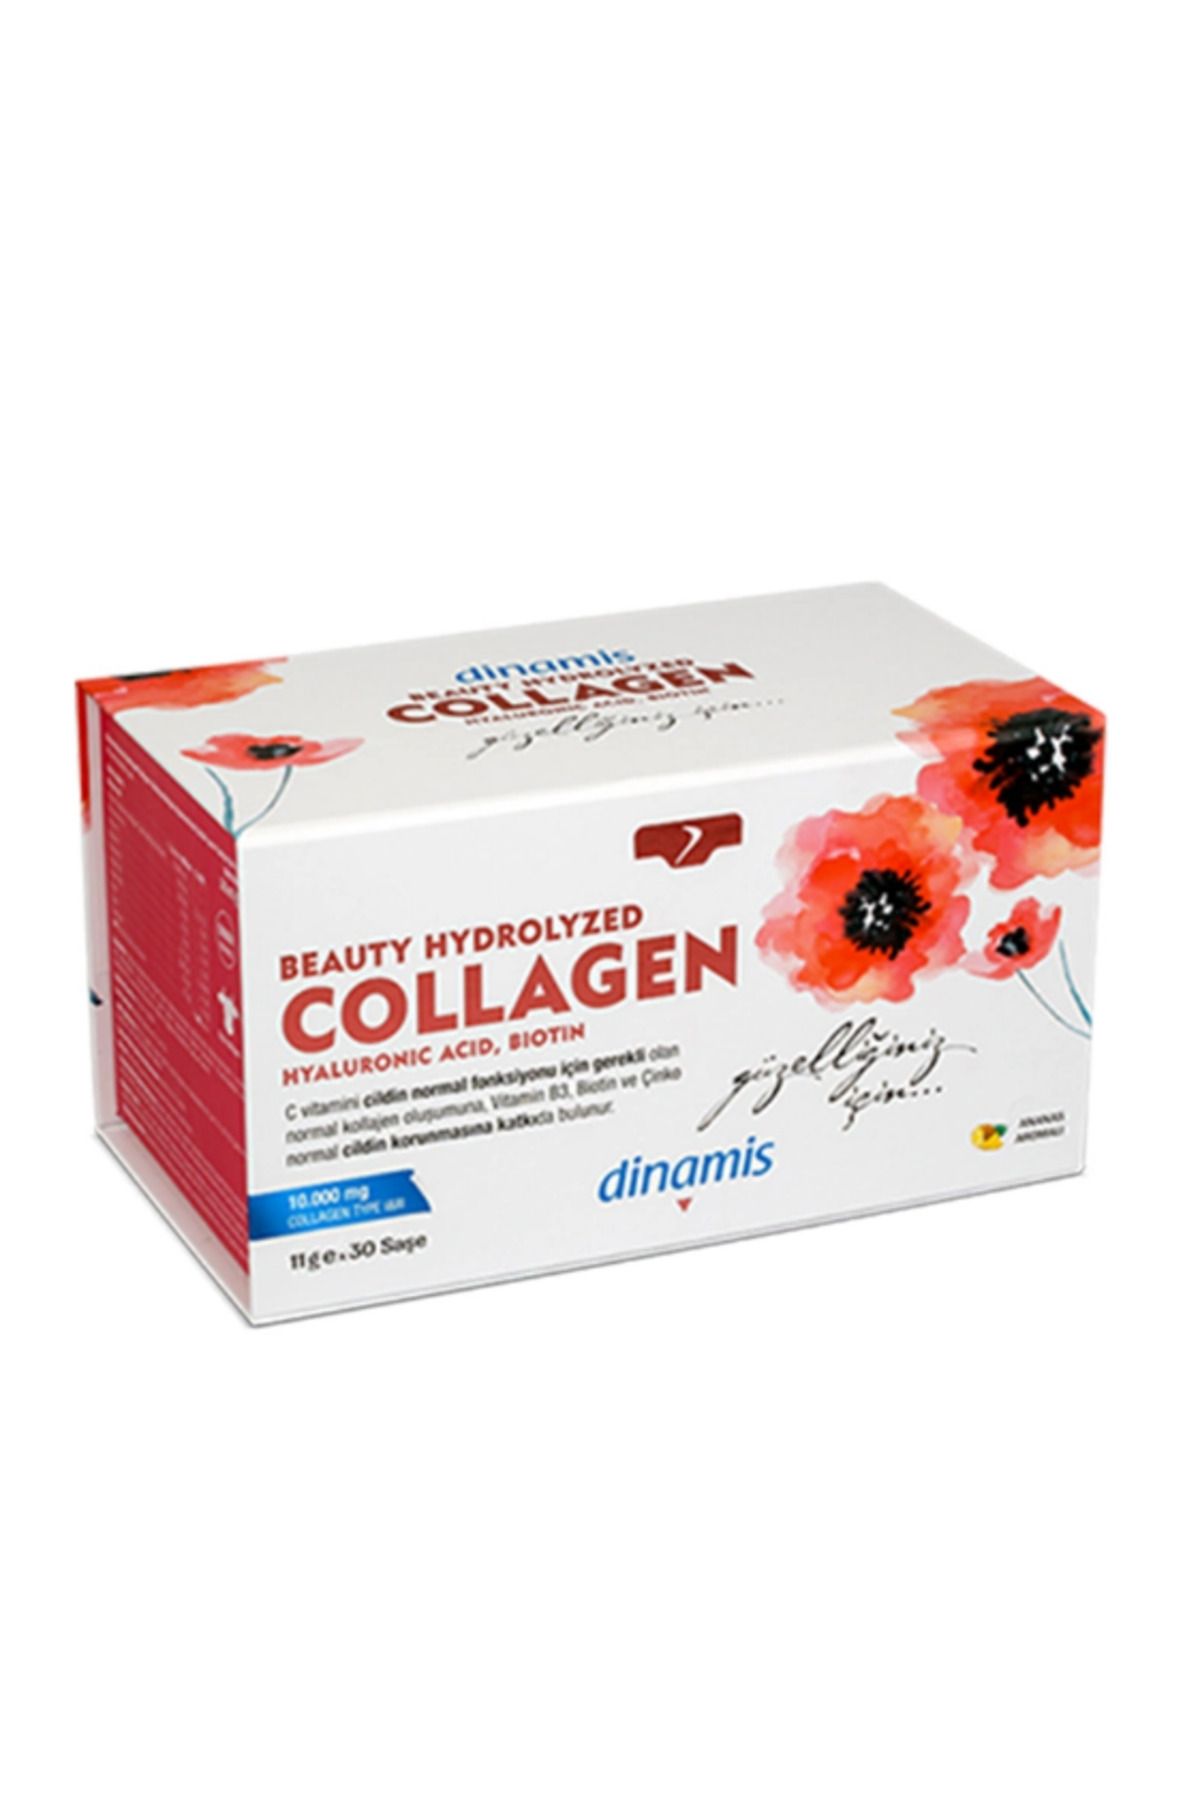 DİNAMİS Dinamis Beauty Hydrolyzed Collagen Içeren Takviye Edici Gıda 11 G X 30 Saşe